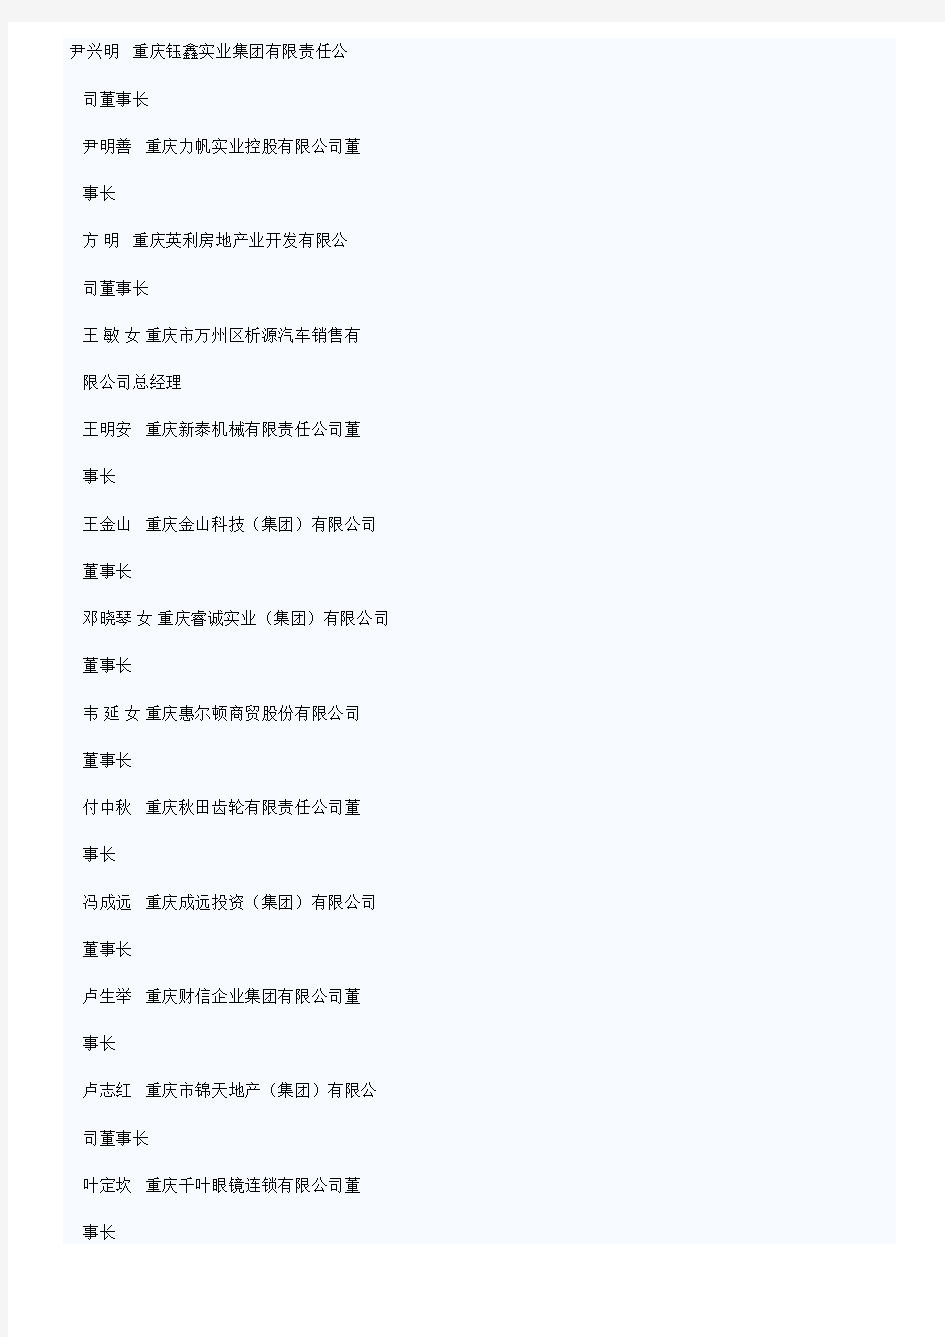 重庆市优秀民营企业家和优秀民营企业推荐名单公示